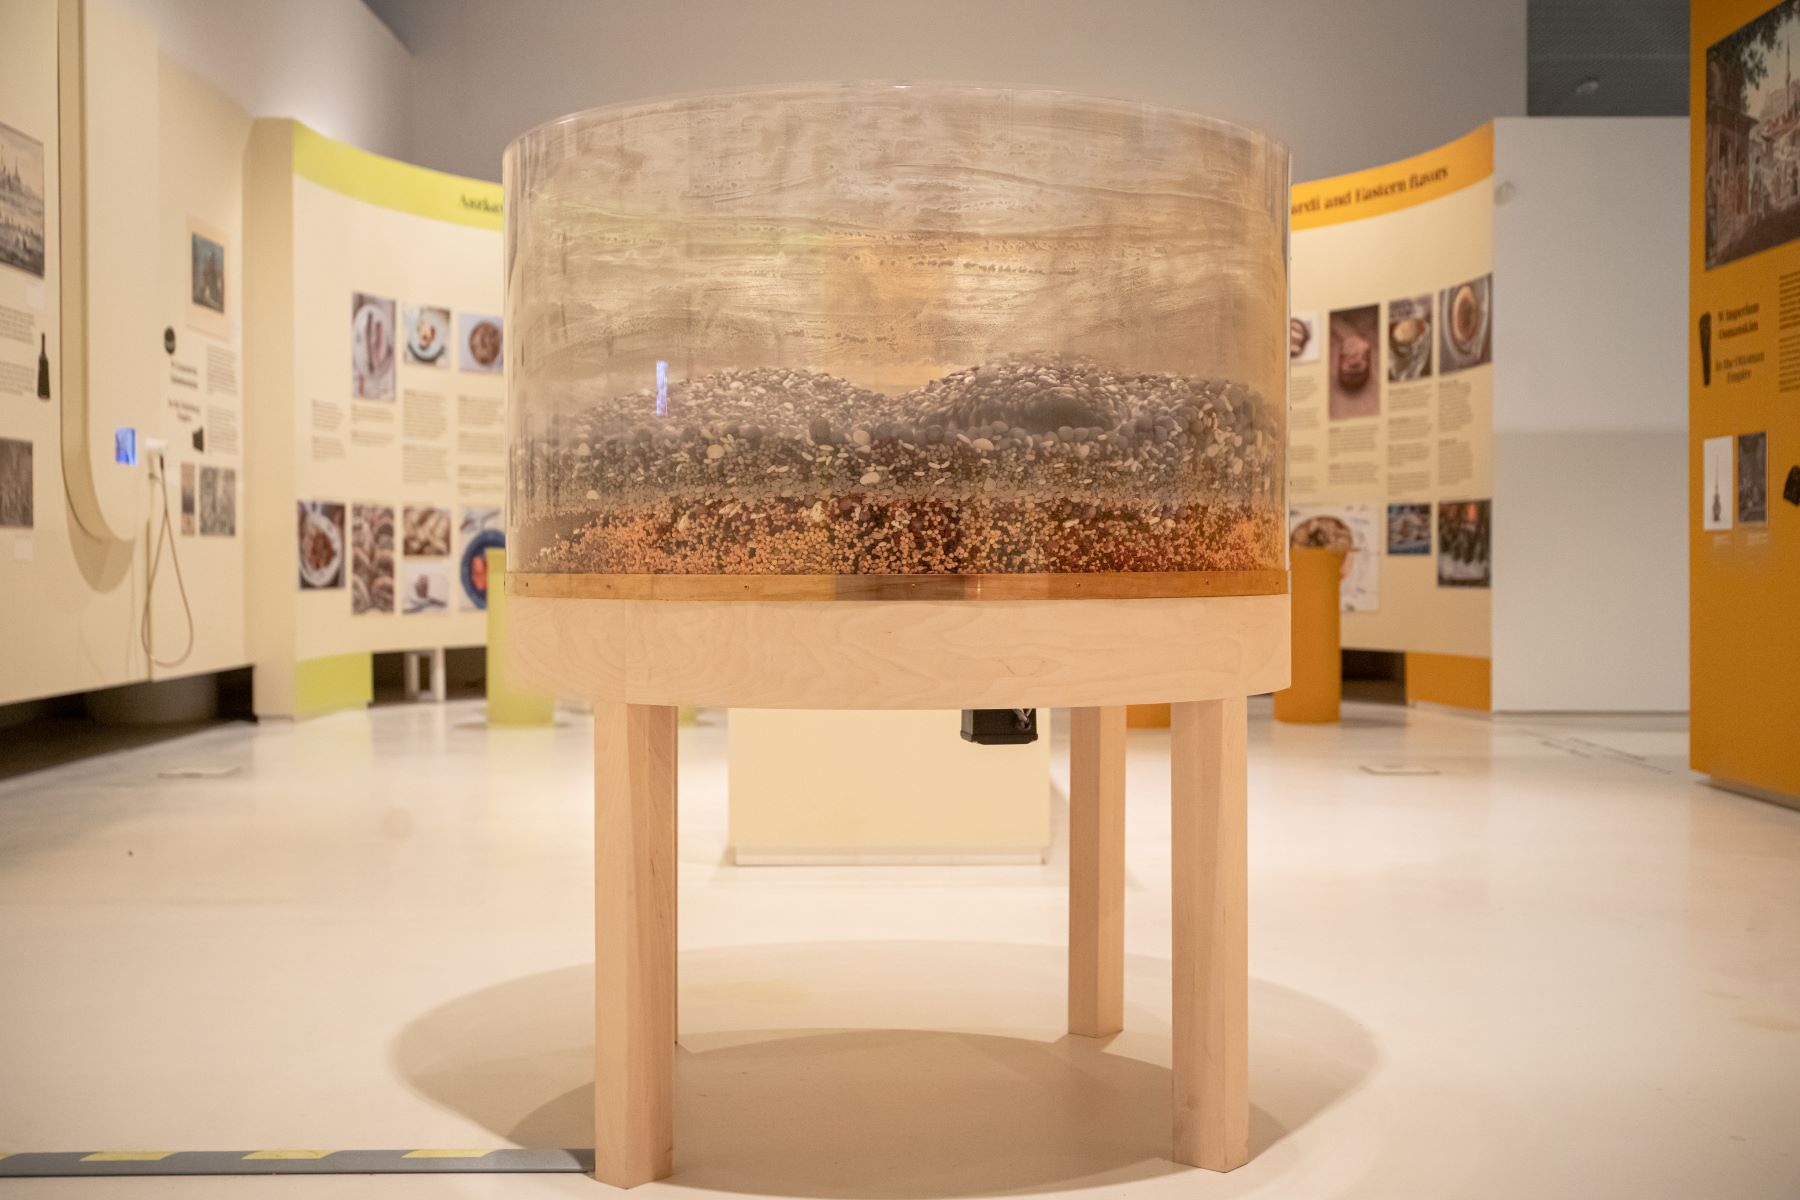 Stół II (Diaspora) autorstwa Anny Królikiewicz, który znajduje się na wystawie "Od kuchni". W plastikowym bębnie stołu mieszają się różne nasiona, np. fasoli i soczewicy.